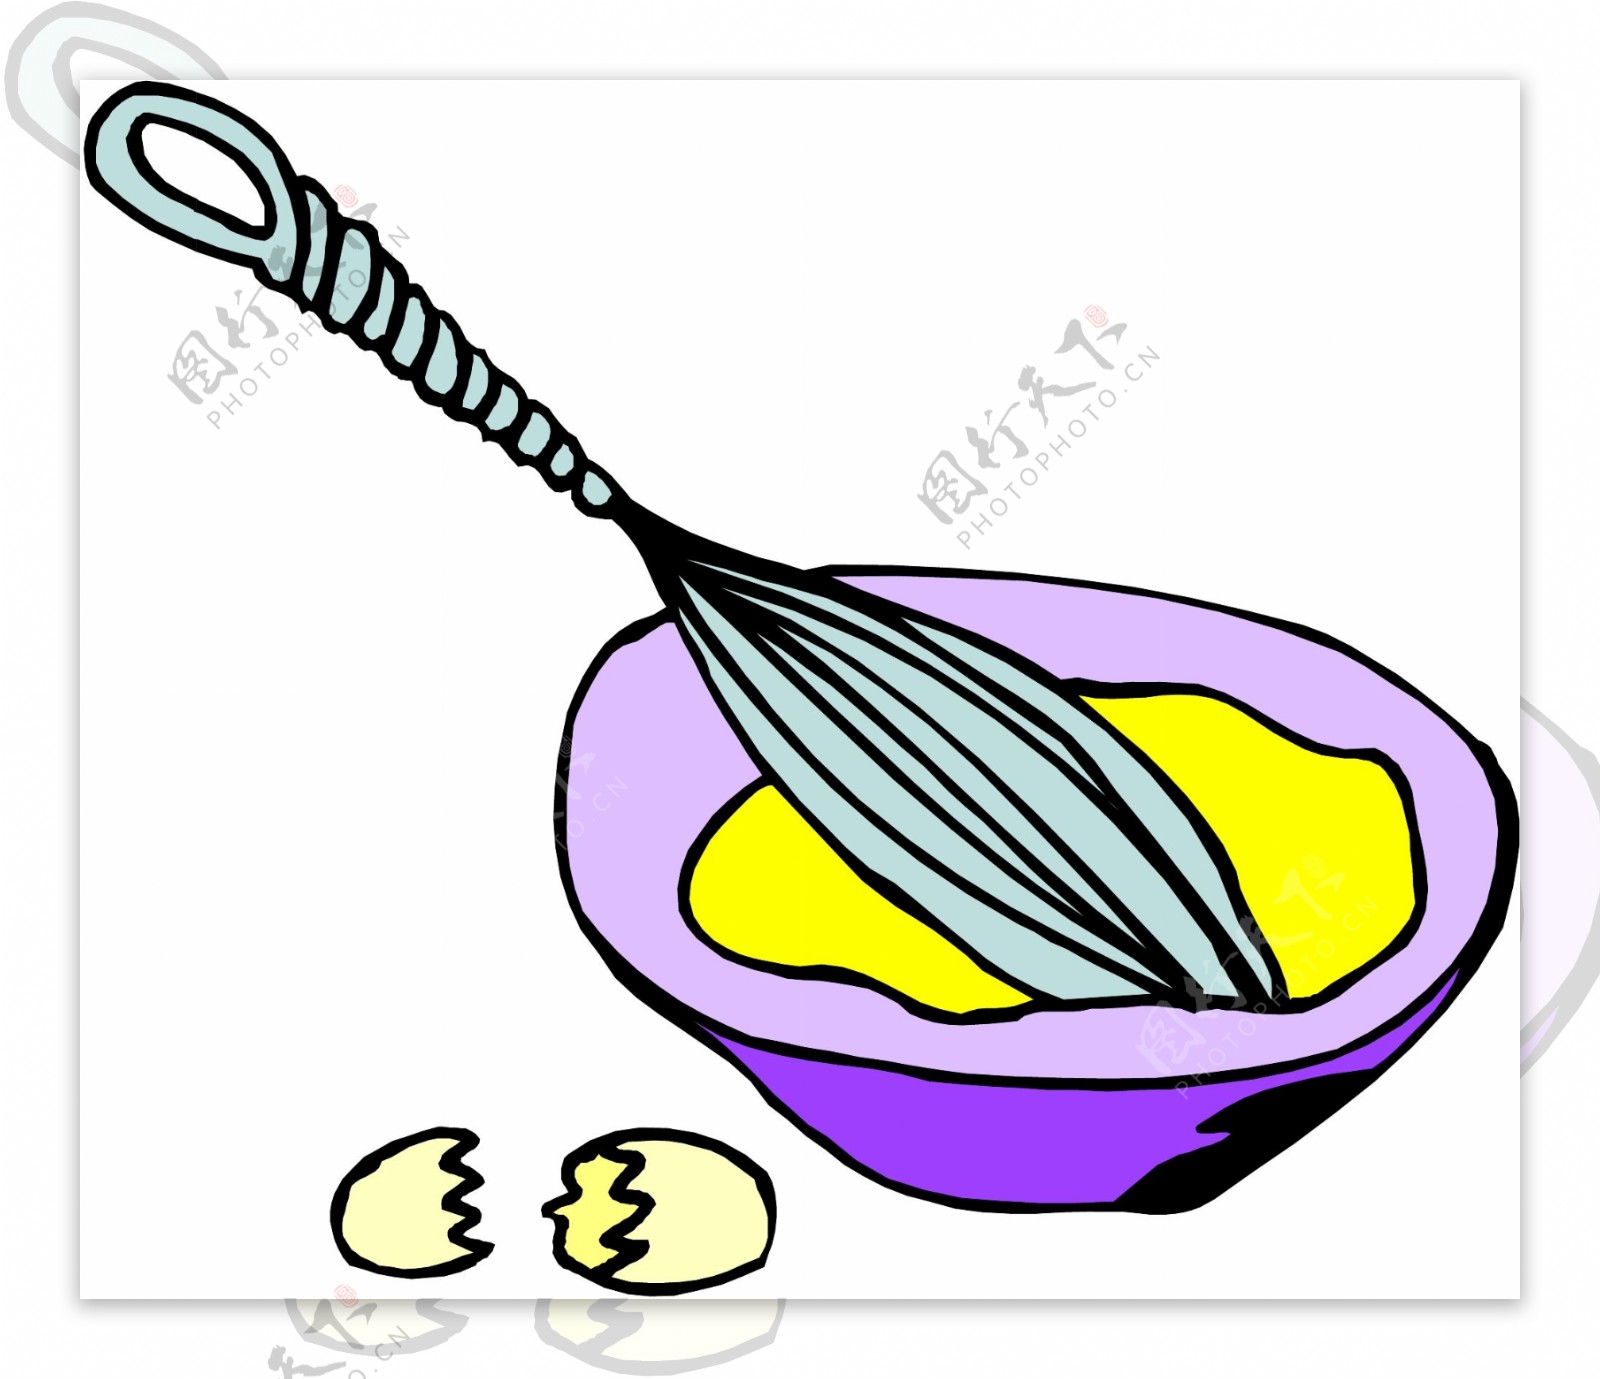 锅具碗筷子刀具